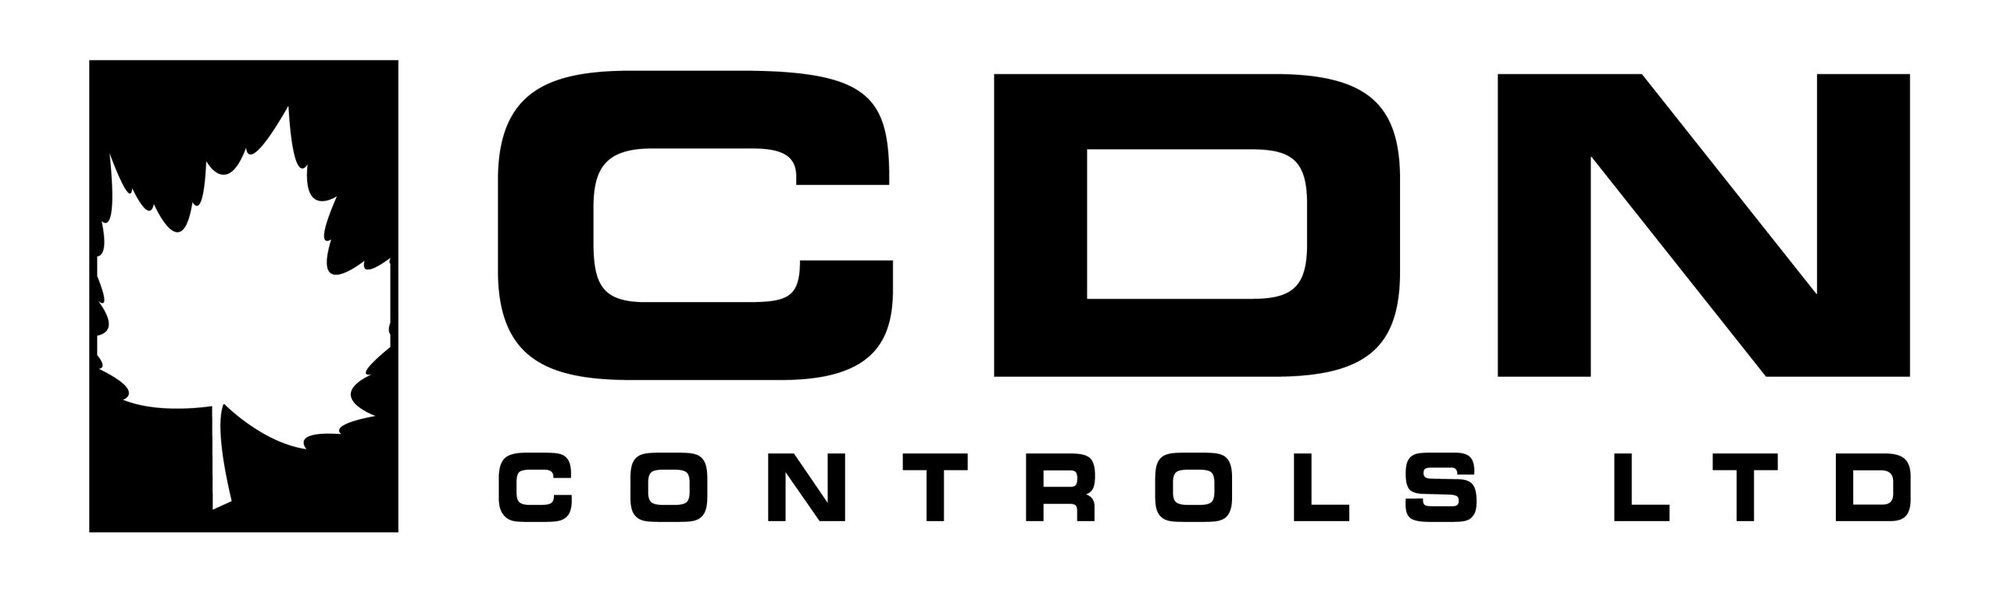 logo_cdn-controls-ltd_logo-only-all-black-01-scaled